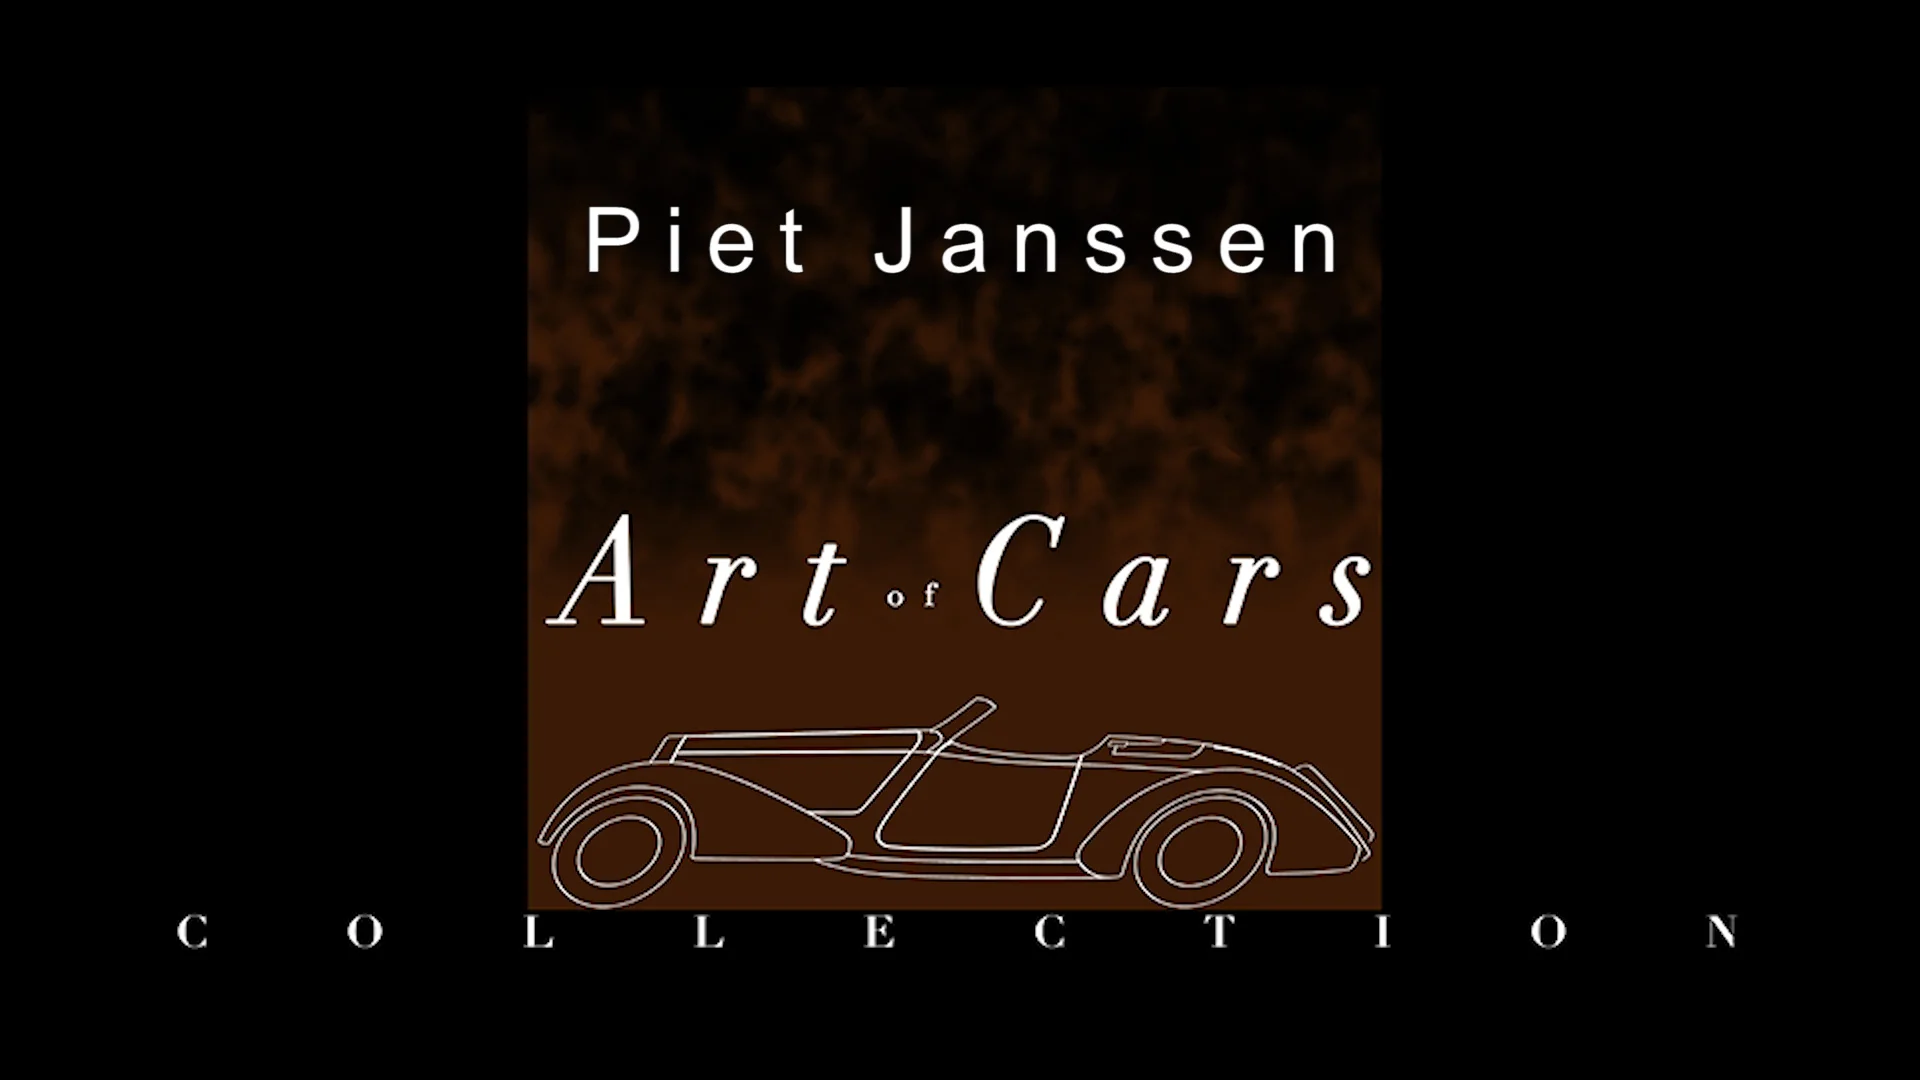 Art of Cars Collection Piet Janssen on Vimeo